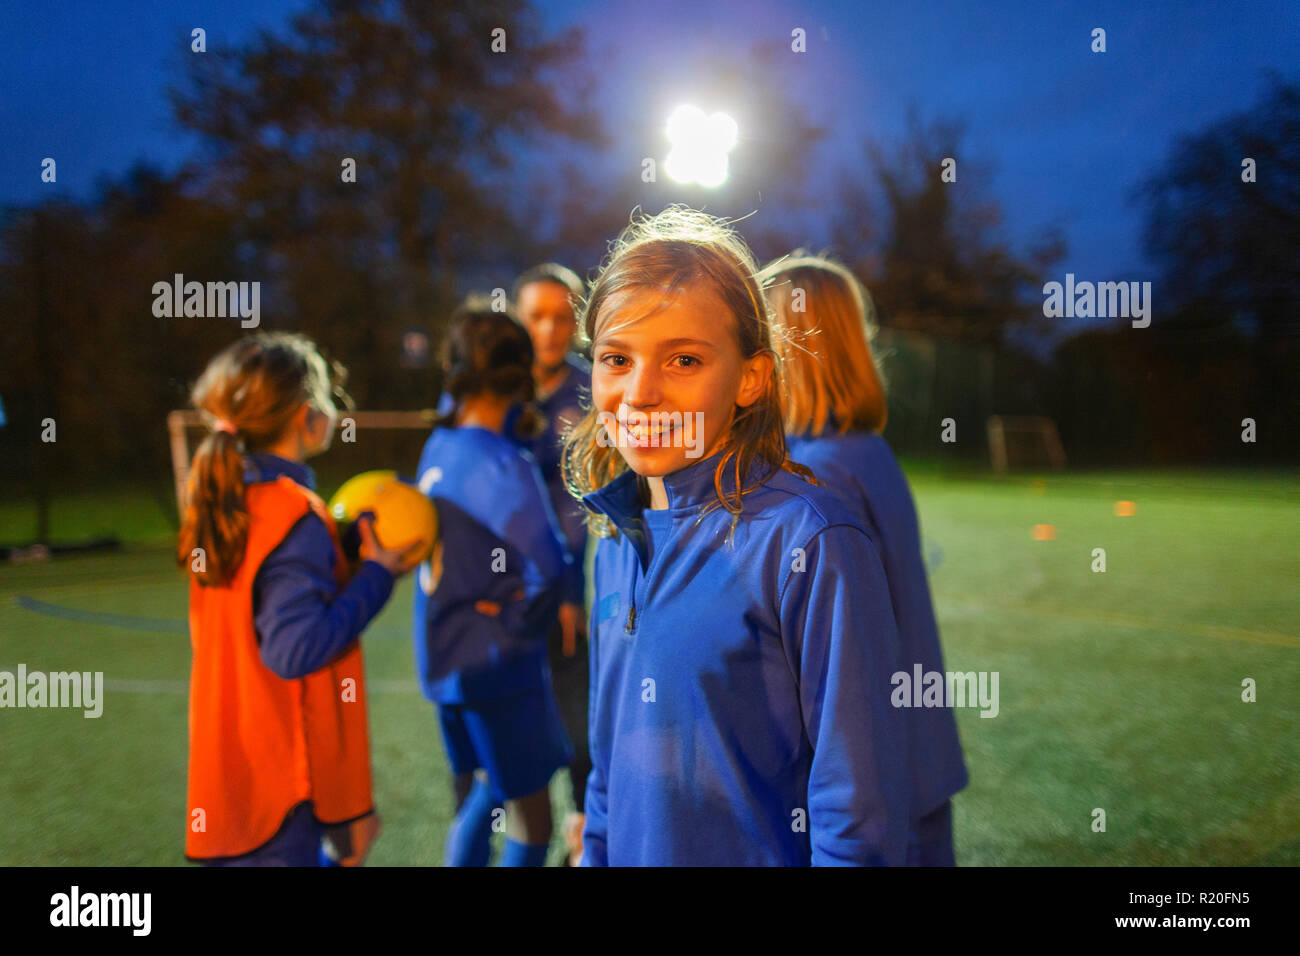 Portrait souriant, confiant girl joueur de football sur terrain de nuit Banque D'Images